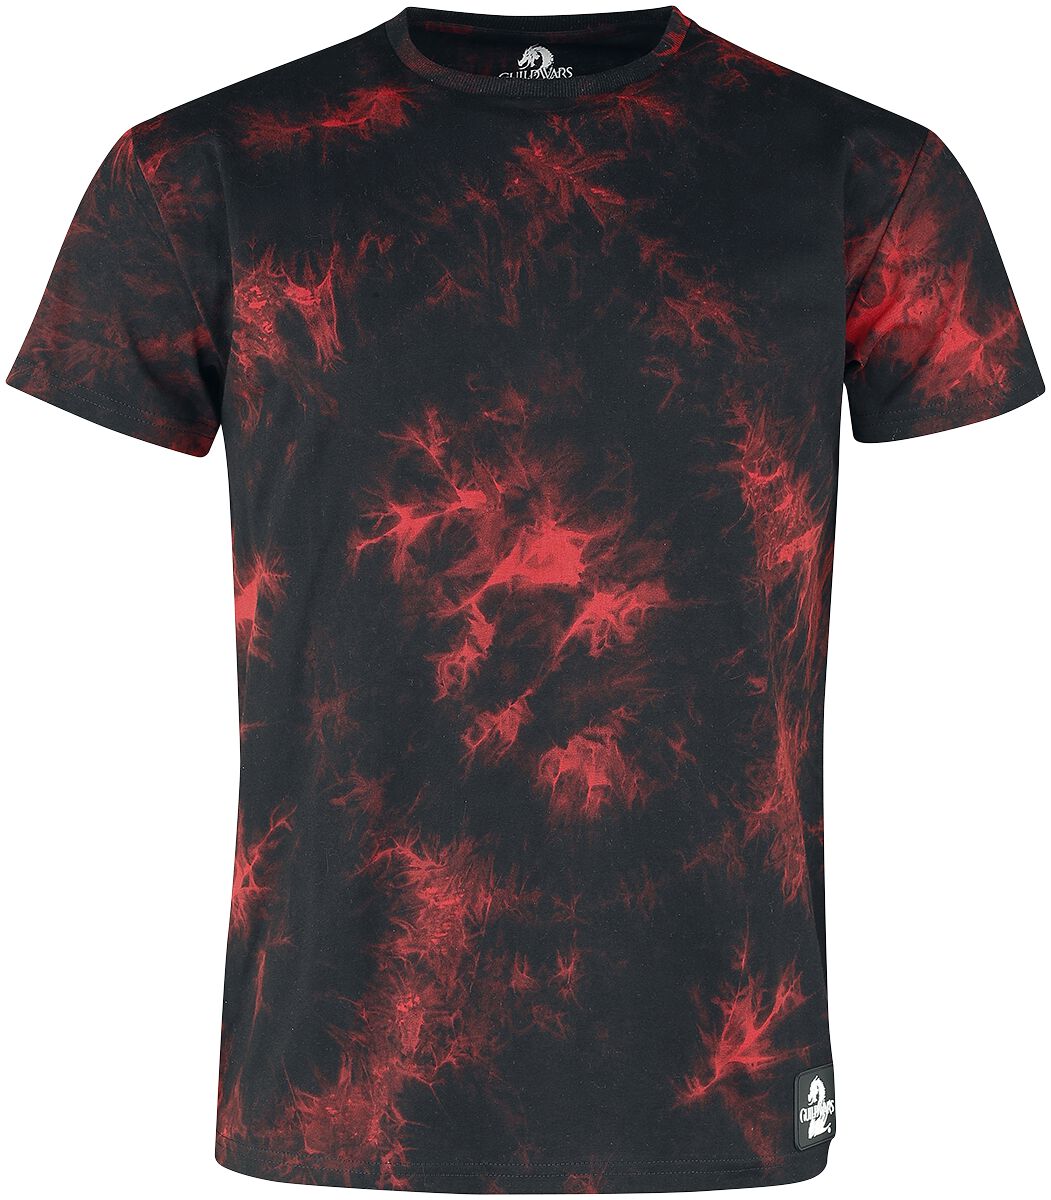 Guild Wars - Gaming T-Shirt - 2 - Dragon - S - für Männer - Größe S - schwarz/rot  - EMP exklusives Merchandise!